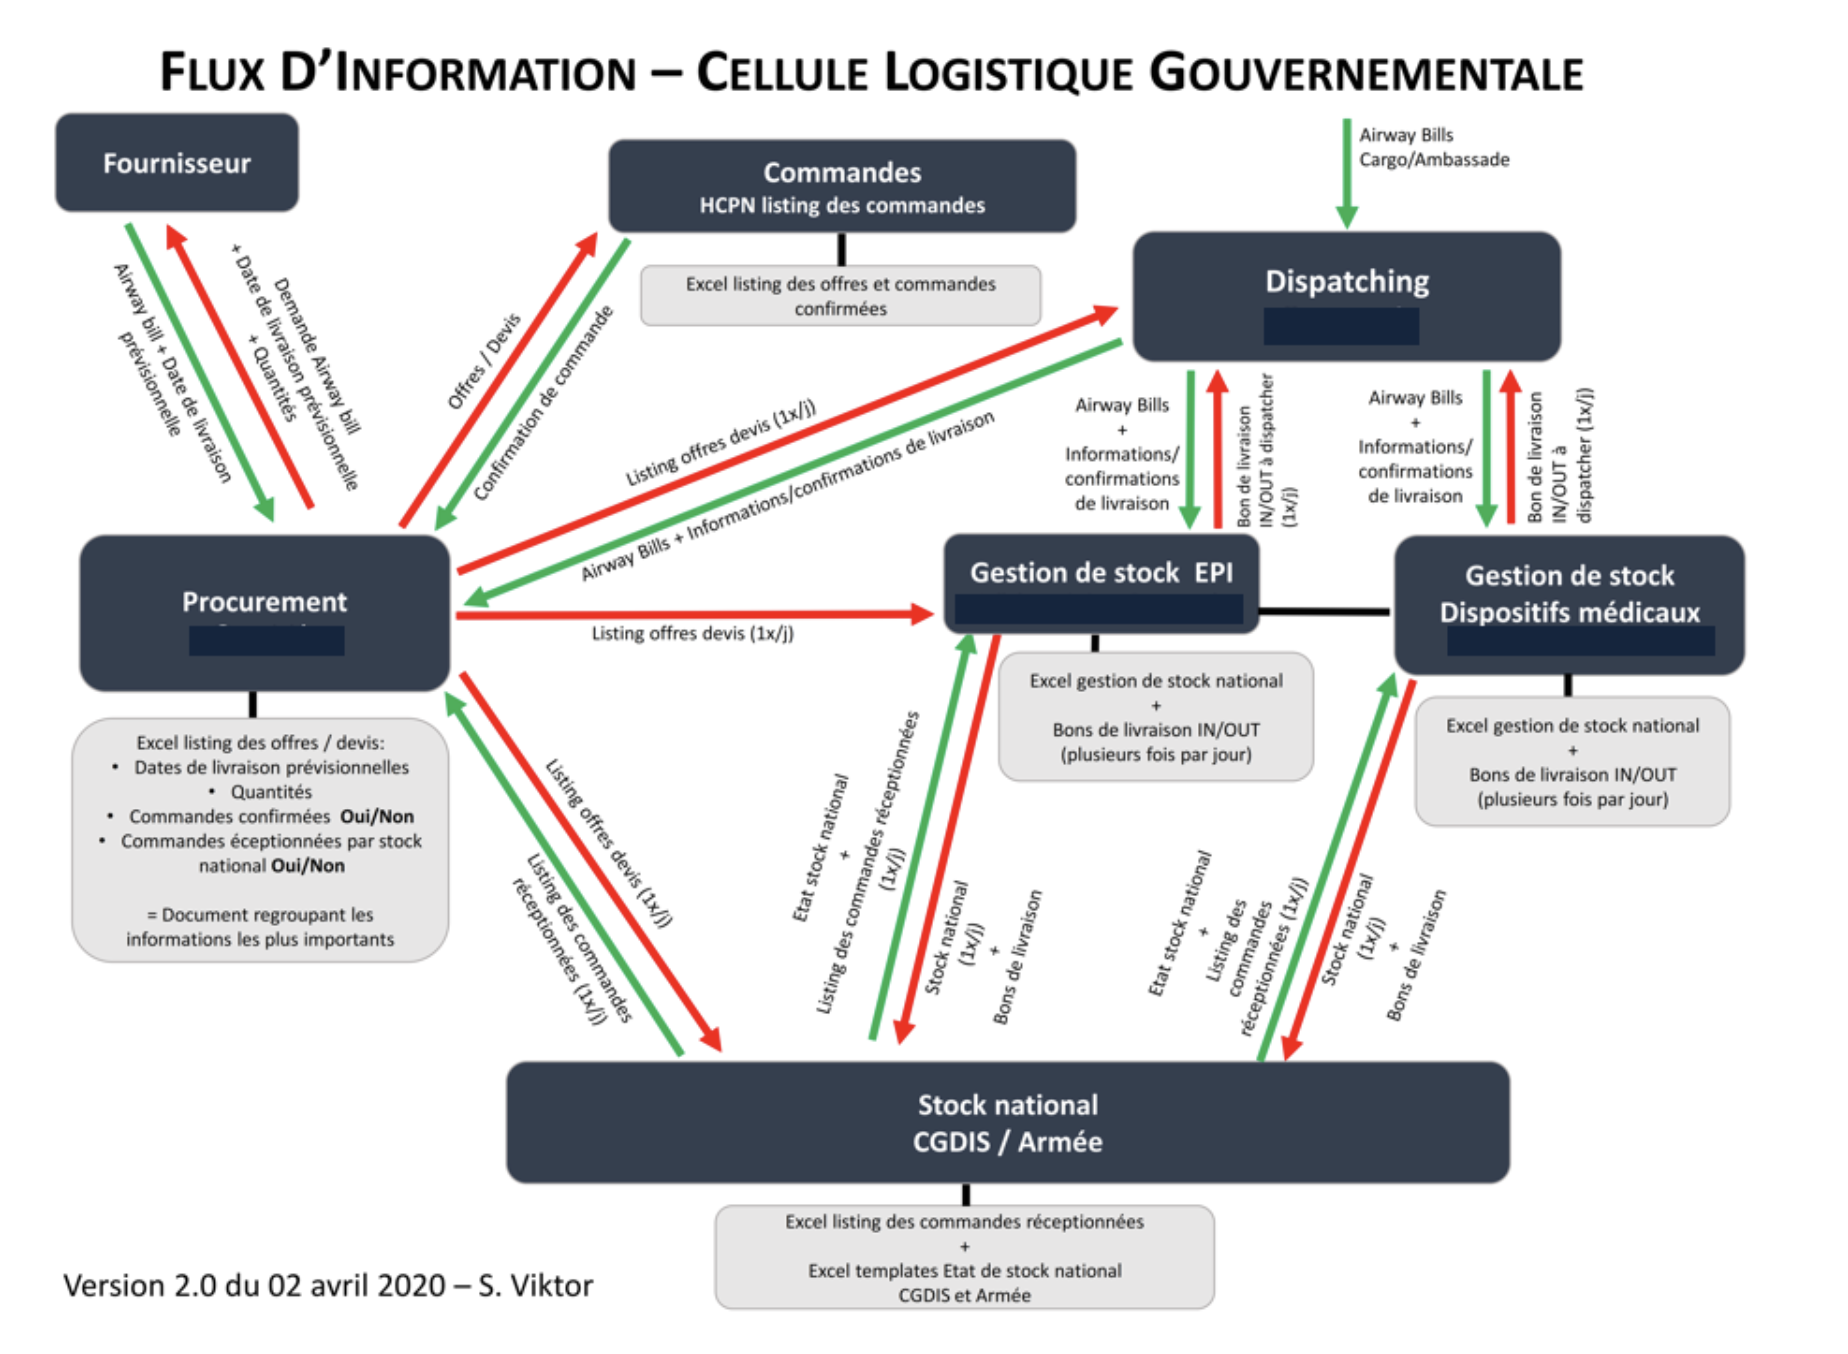 Figure 9.Structure de la cellule logistique gouvernementale. Source : HCPN, et CGDIS.